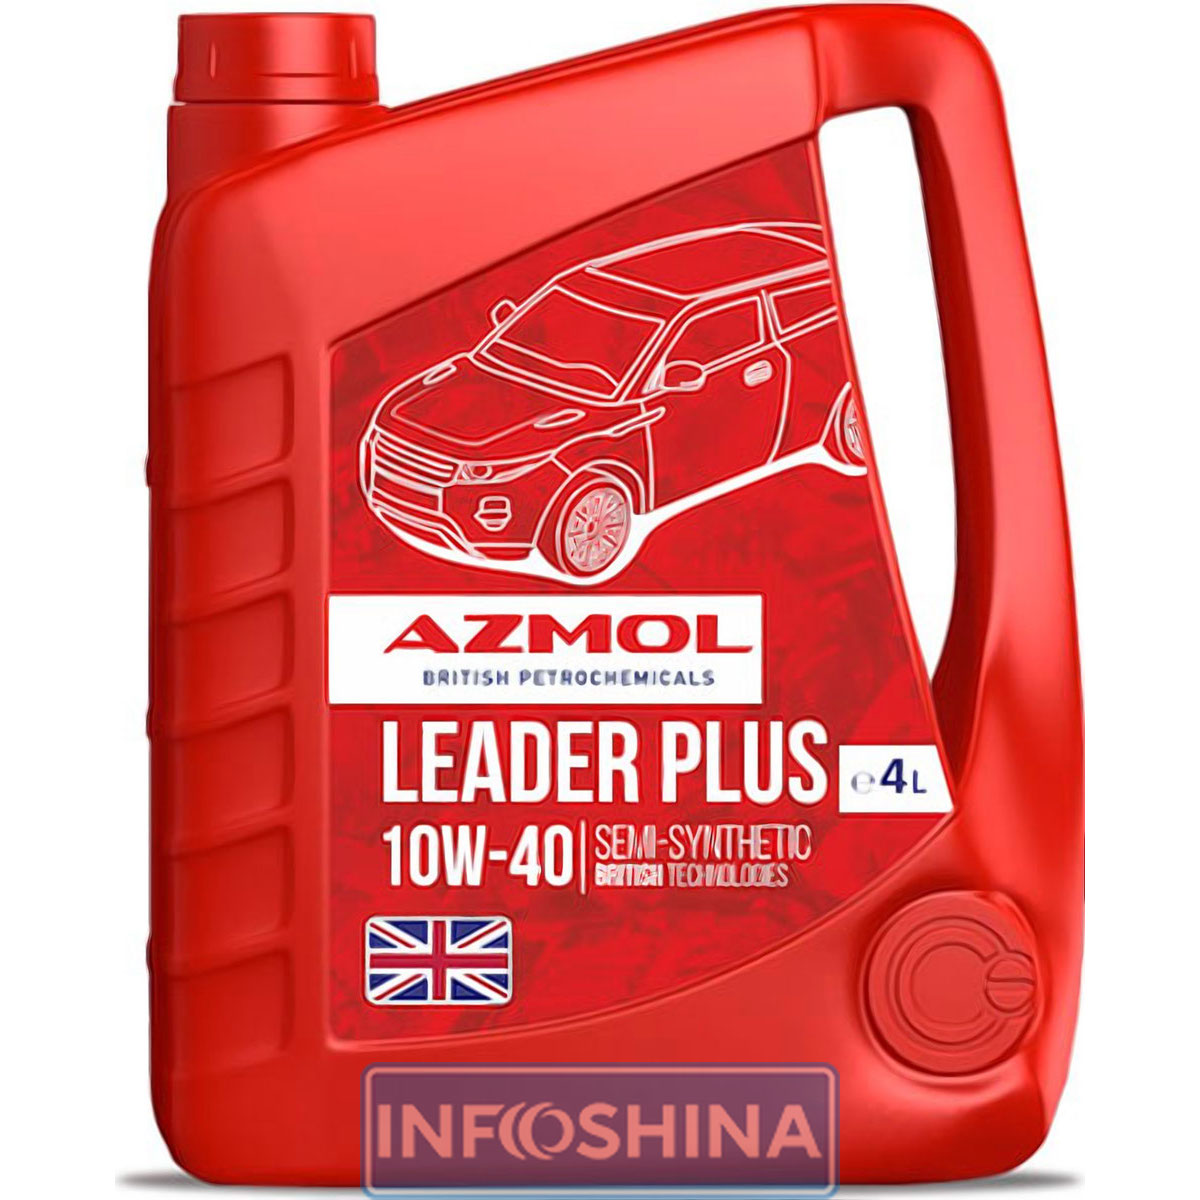 Azmol Leader Plus 10W-40